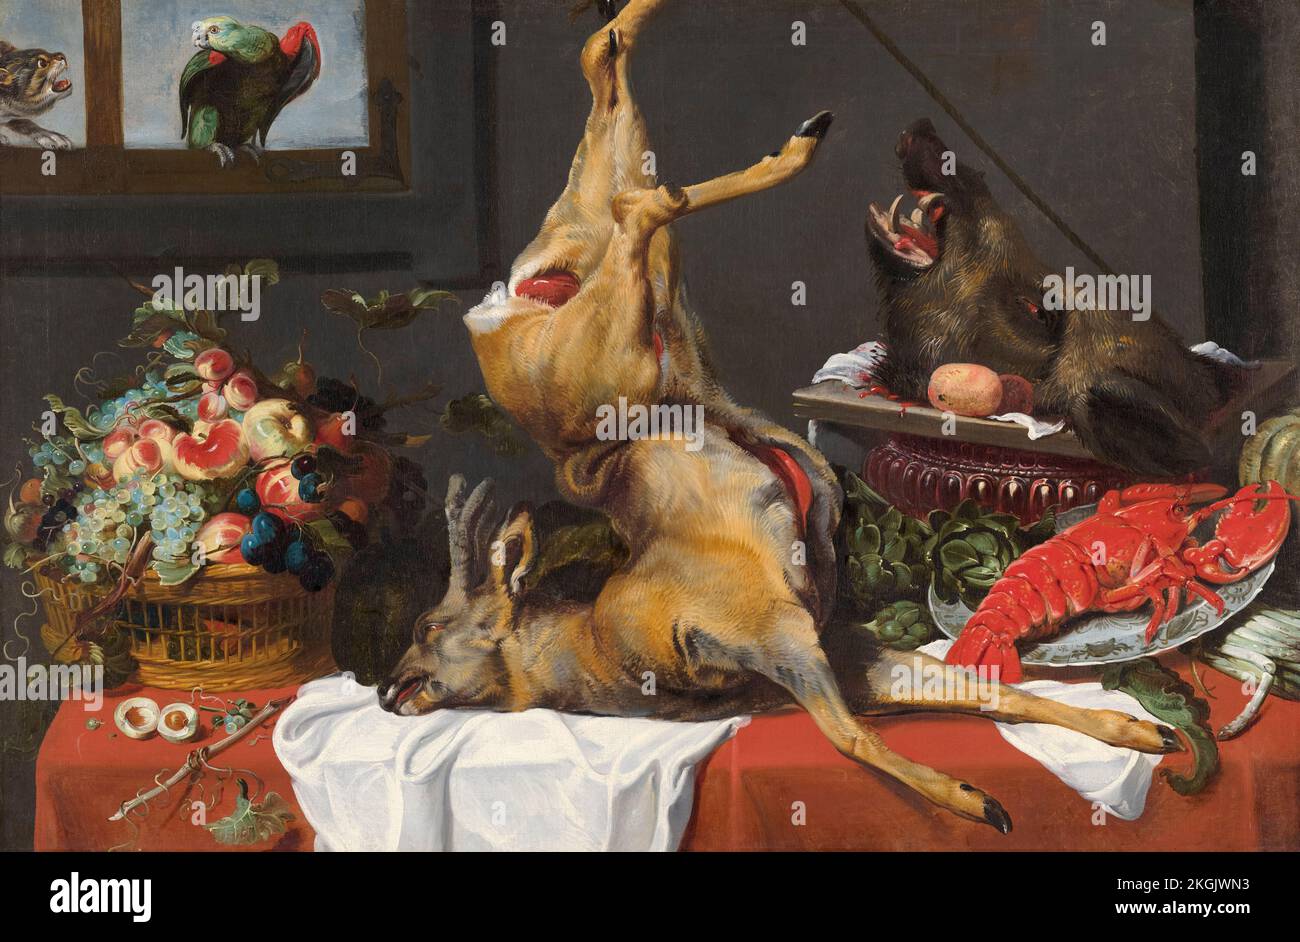 Atelier de Frans Snyders, Still Life with a Dead Stag, peinture à l'huile sur toile, vers 1650 Banque D'Images